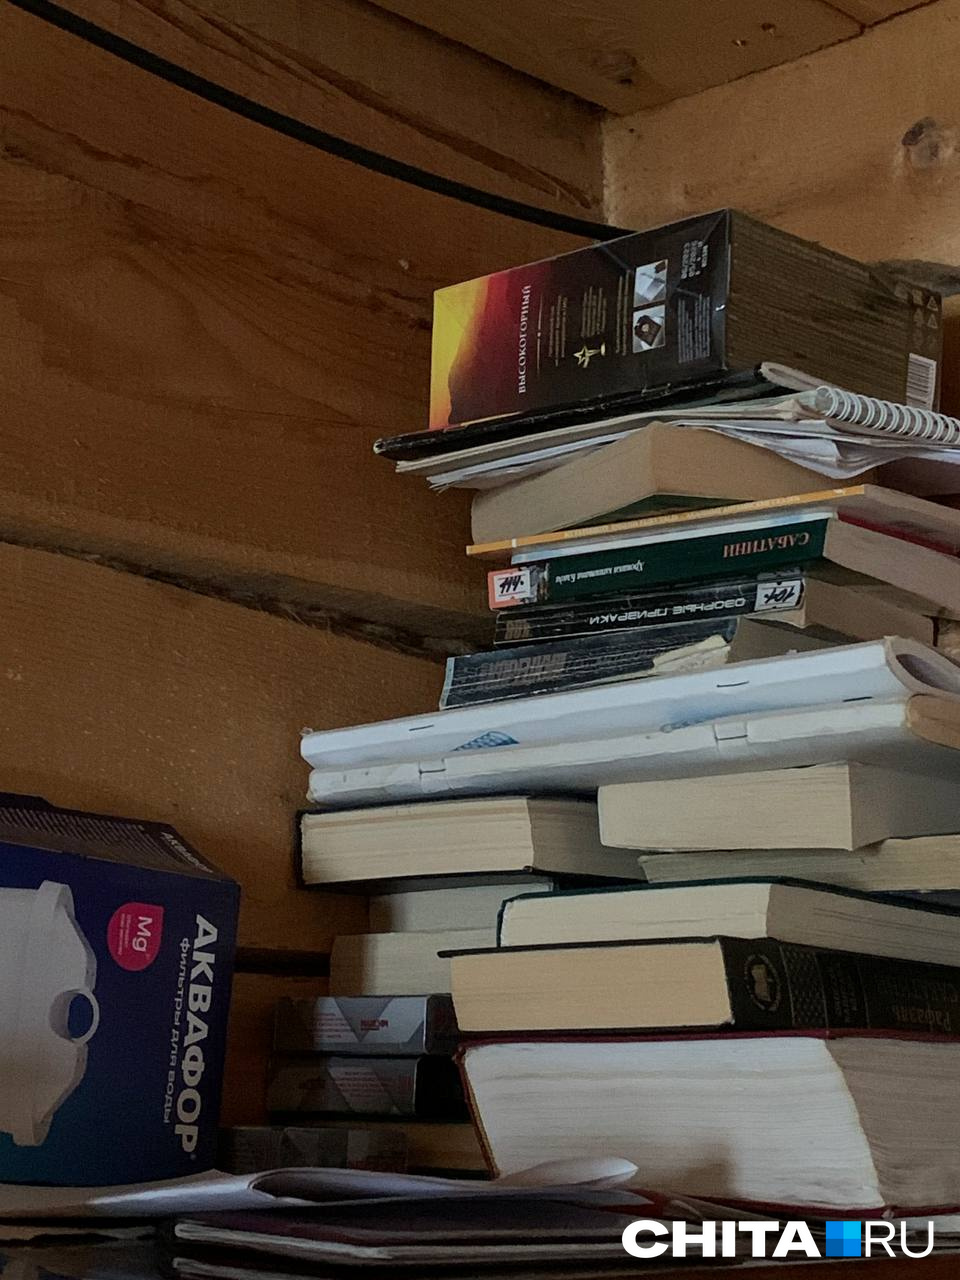 Папа всегда много читал — по всему его домику лежат раскрытые книжки и ручки рядом